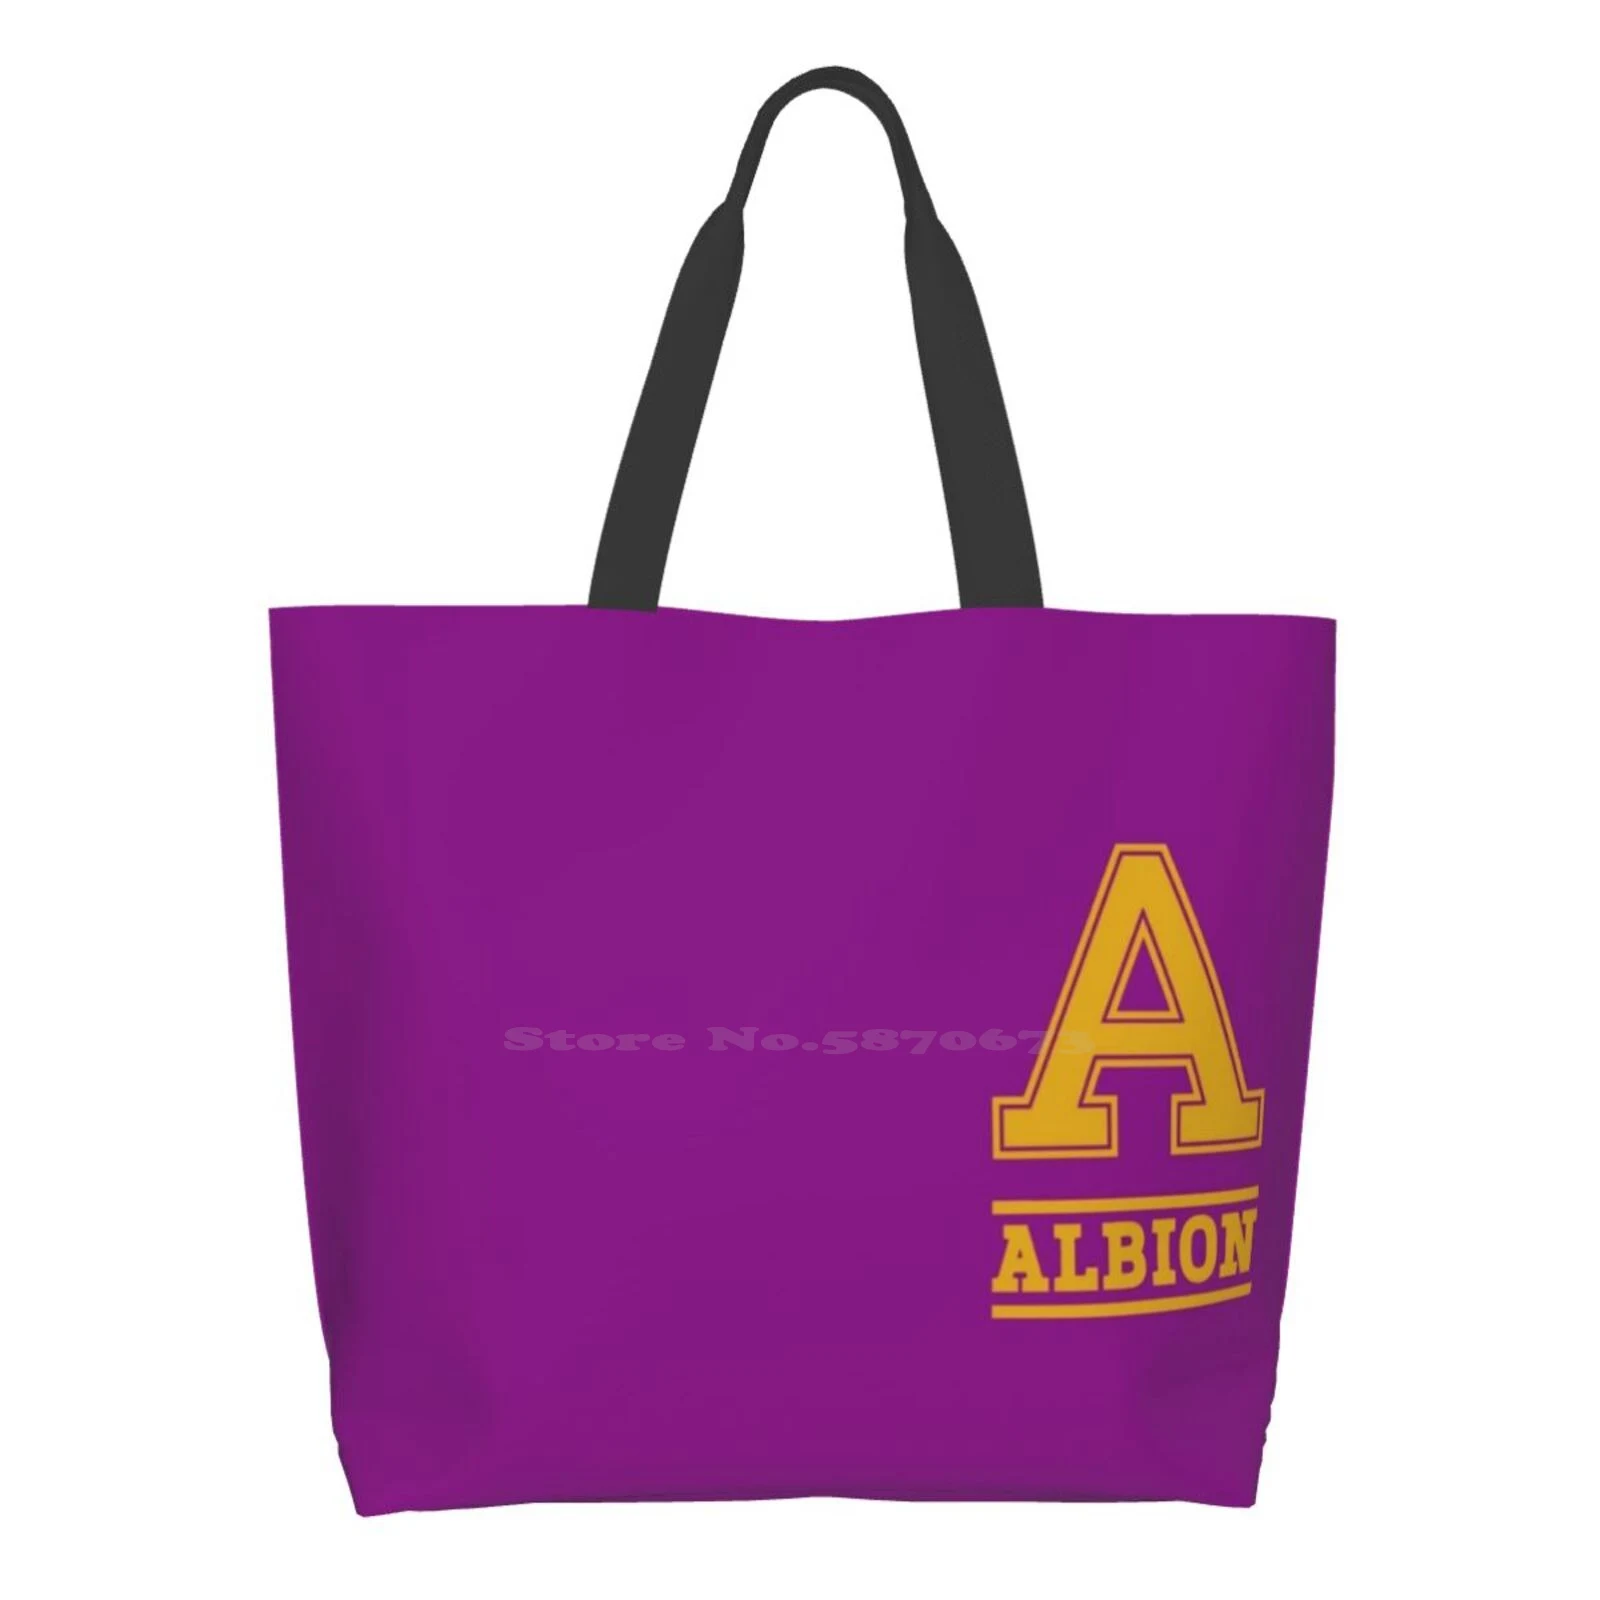 

Повседневная Дамская сумочка Albion для колледжа, многоразовая вместительная сумка-тоут, для колледжа, спорта, турнира, хоккея, атлетики